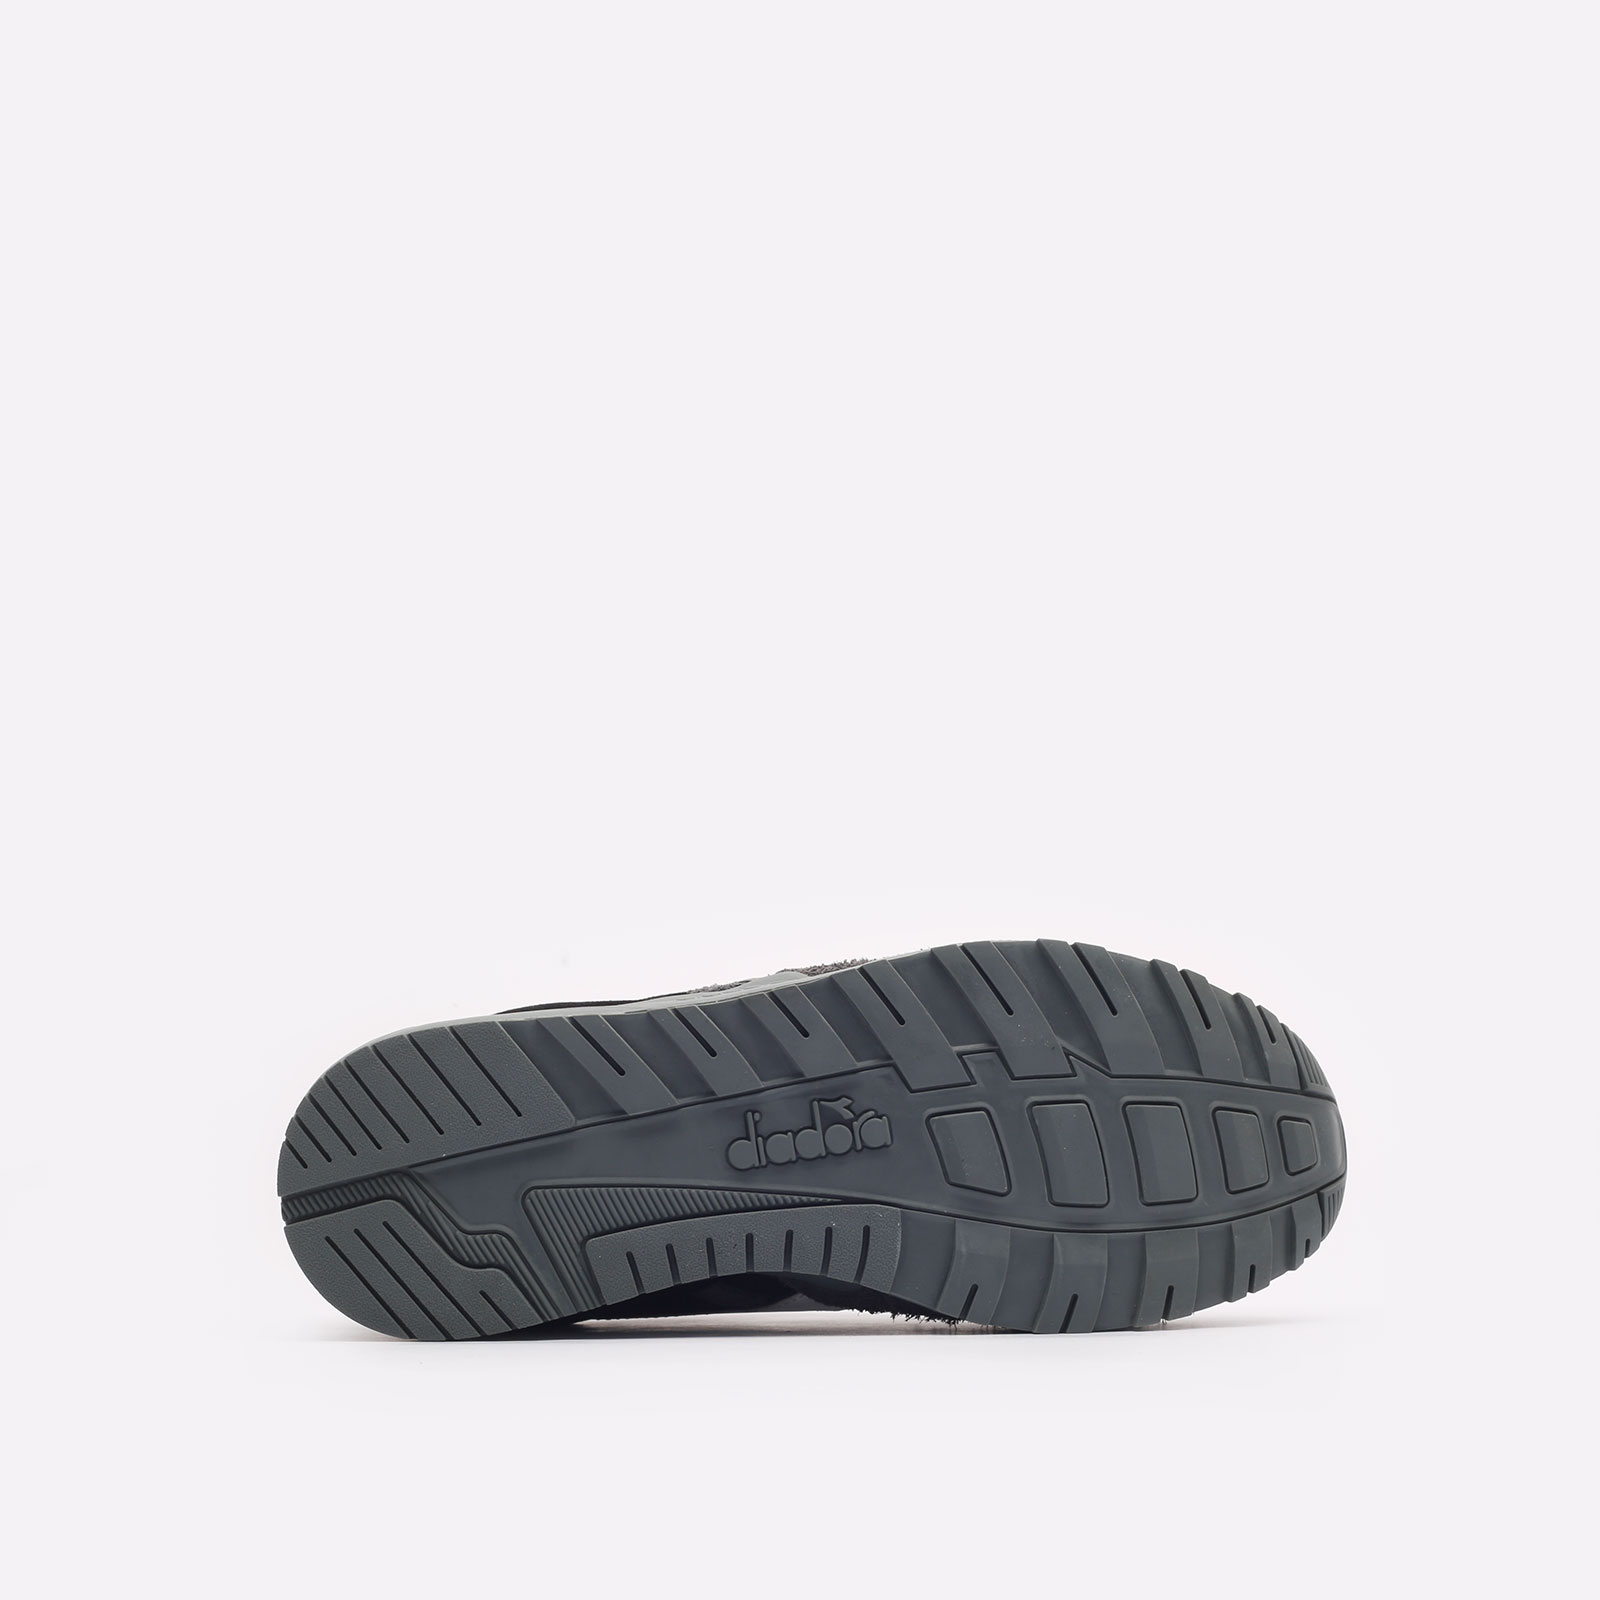 мужские черные кроссовки Diadora N902 Hairy Suede DR501179800 - цена, описание, фото 5